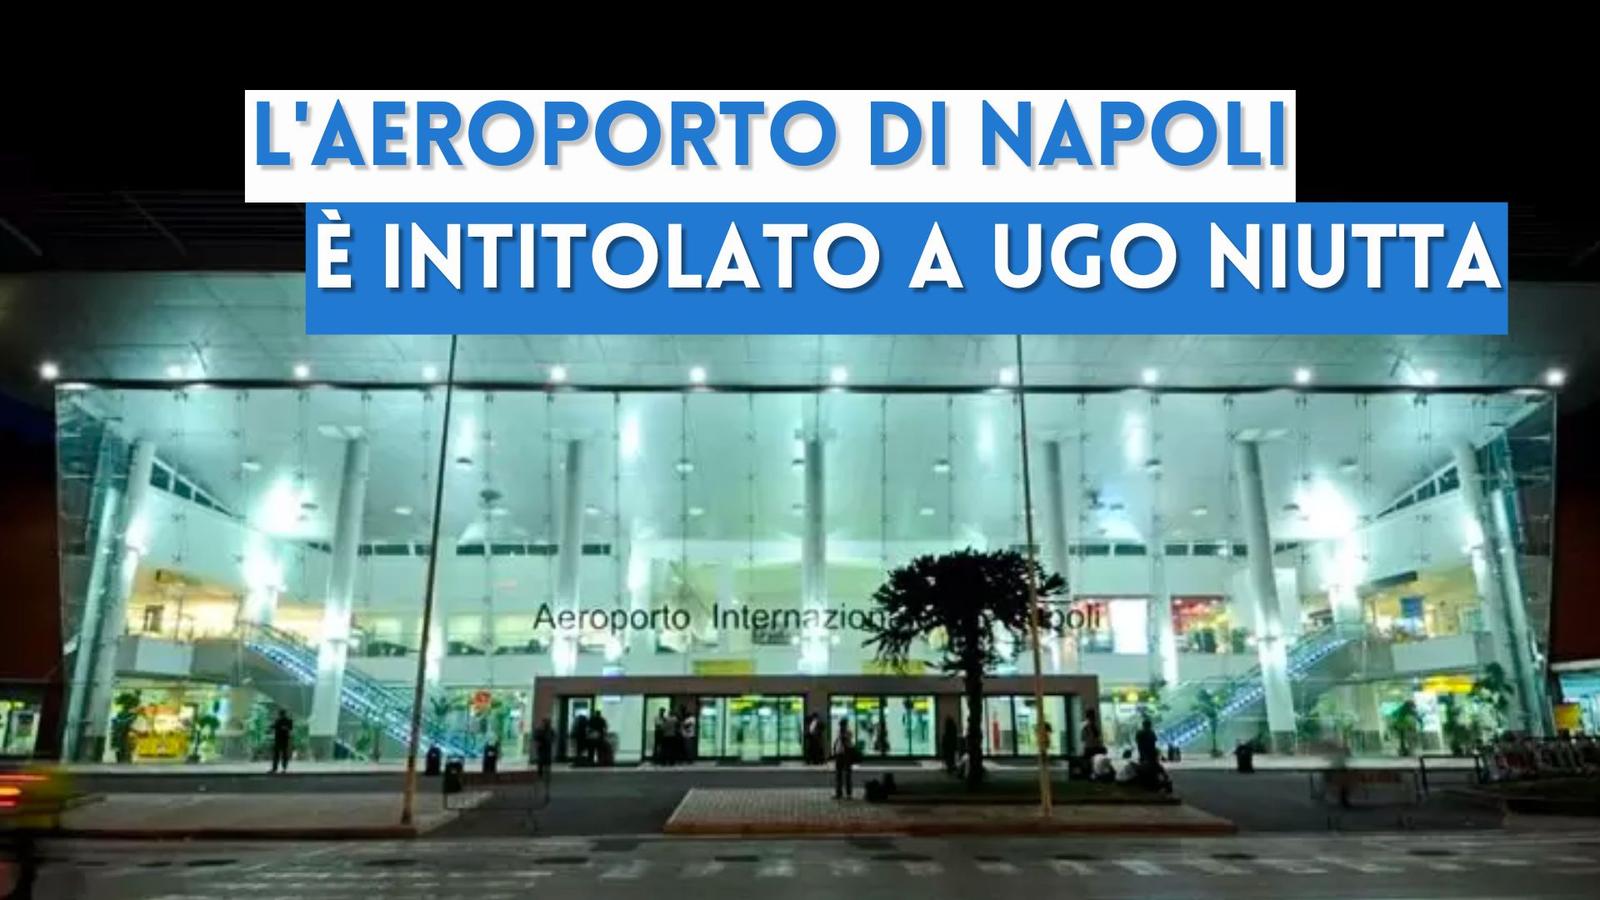 L'Aeroporto di Capodichino è intitolato a "Ugo Niutta": chi era?